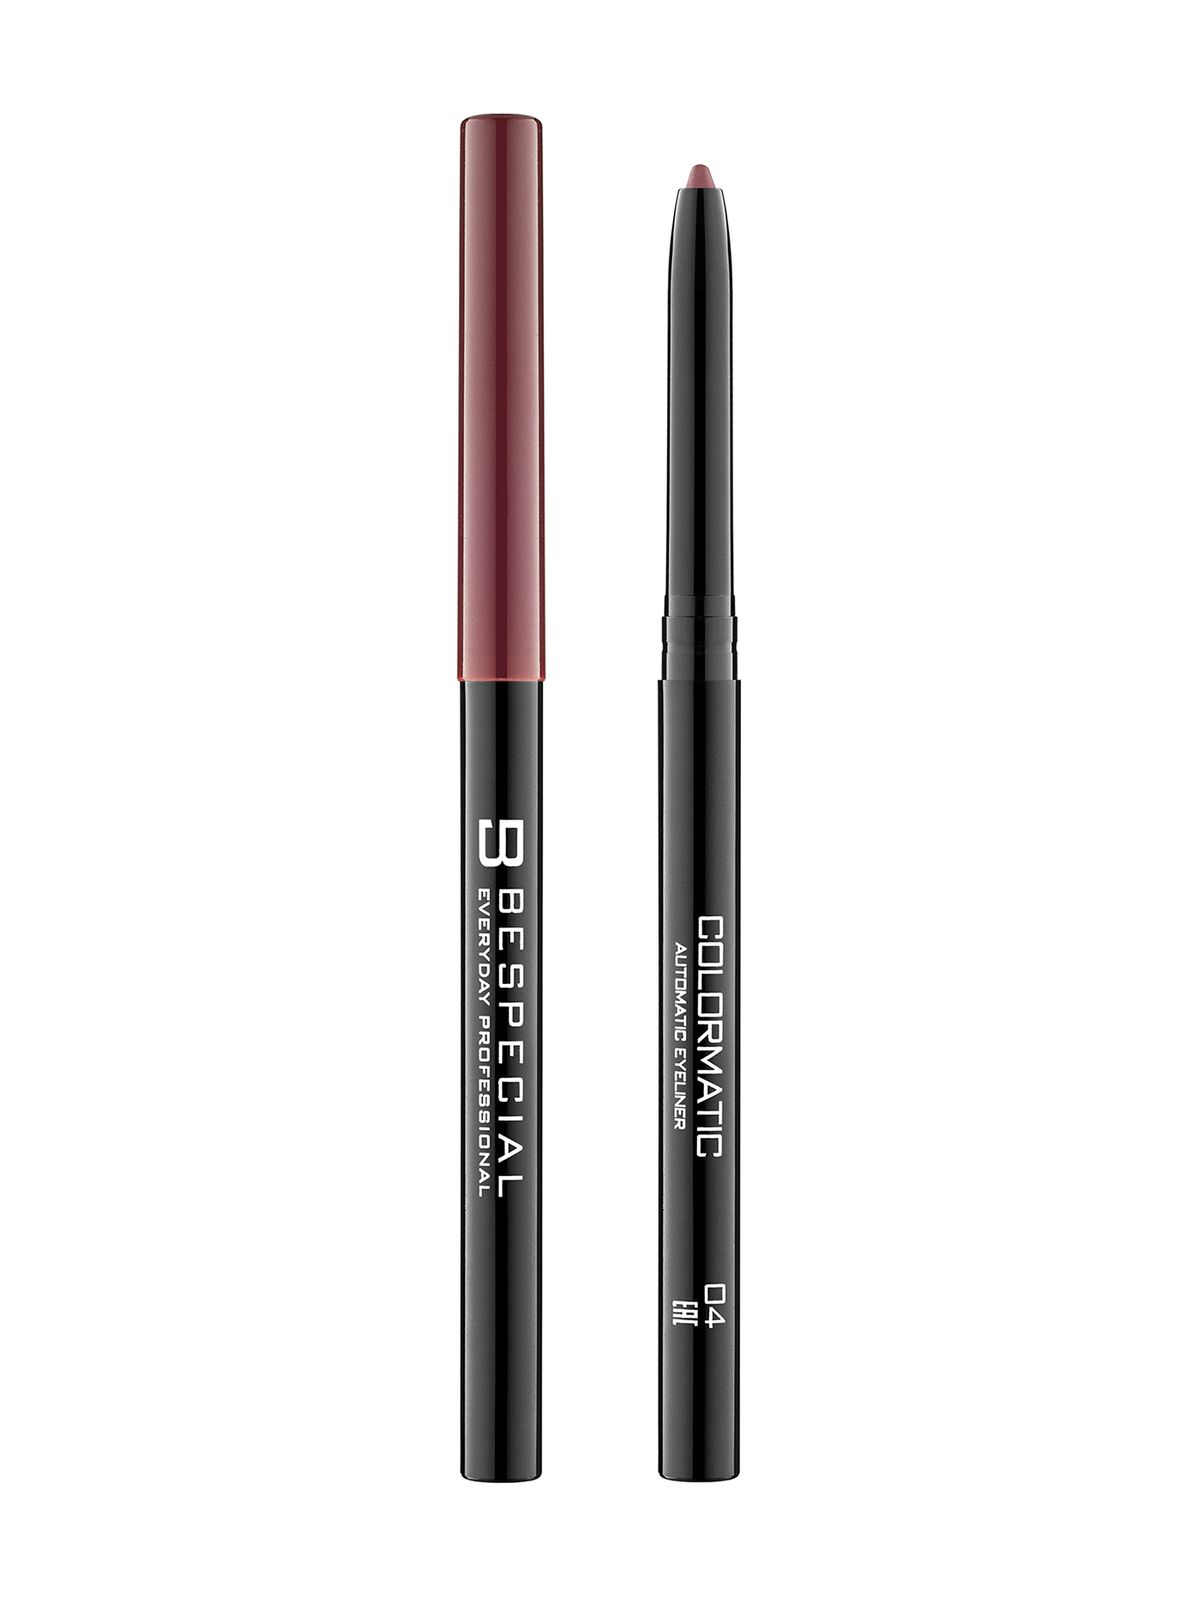 Механический карандаш для глаз Bespecial Colormatic Eye Pencil карандаш для глаз shiseido microliner ink с тонким наконечником тон 10 burgundy 0 08 г